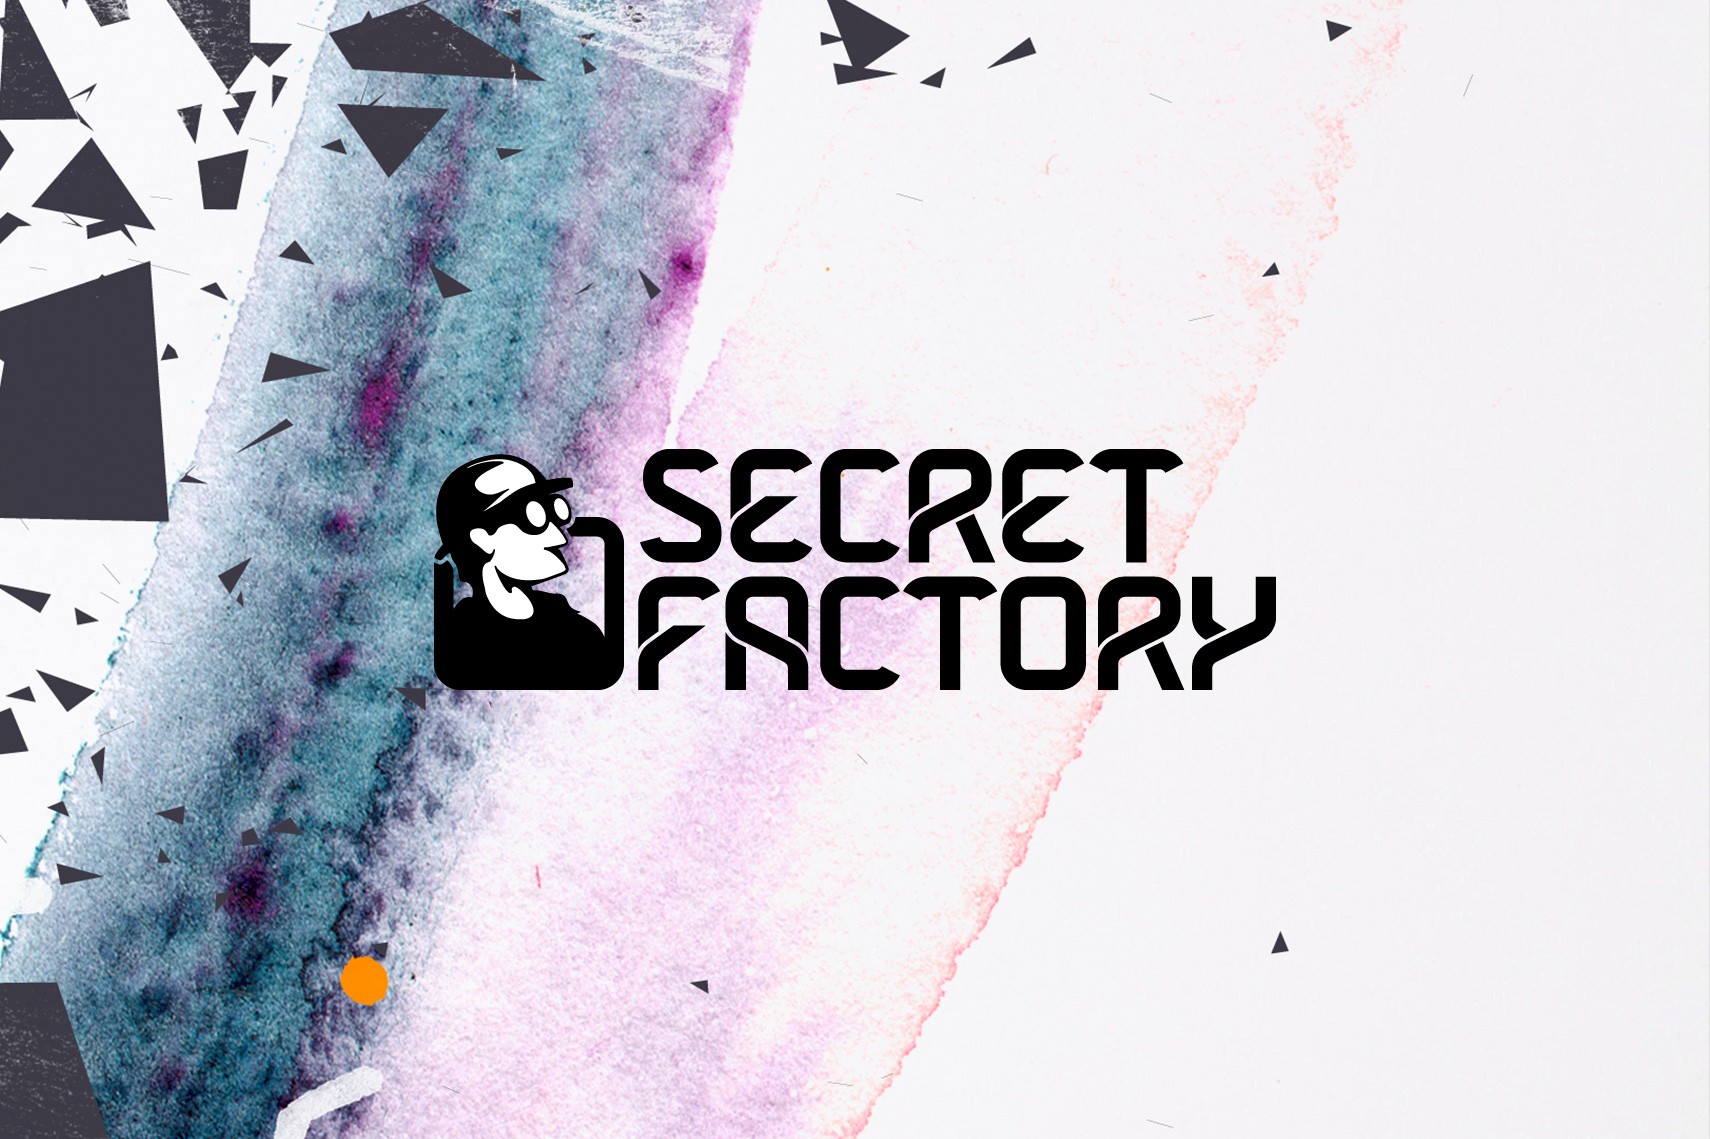 Secret Factory